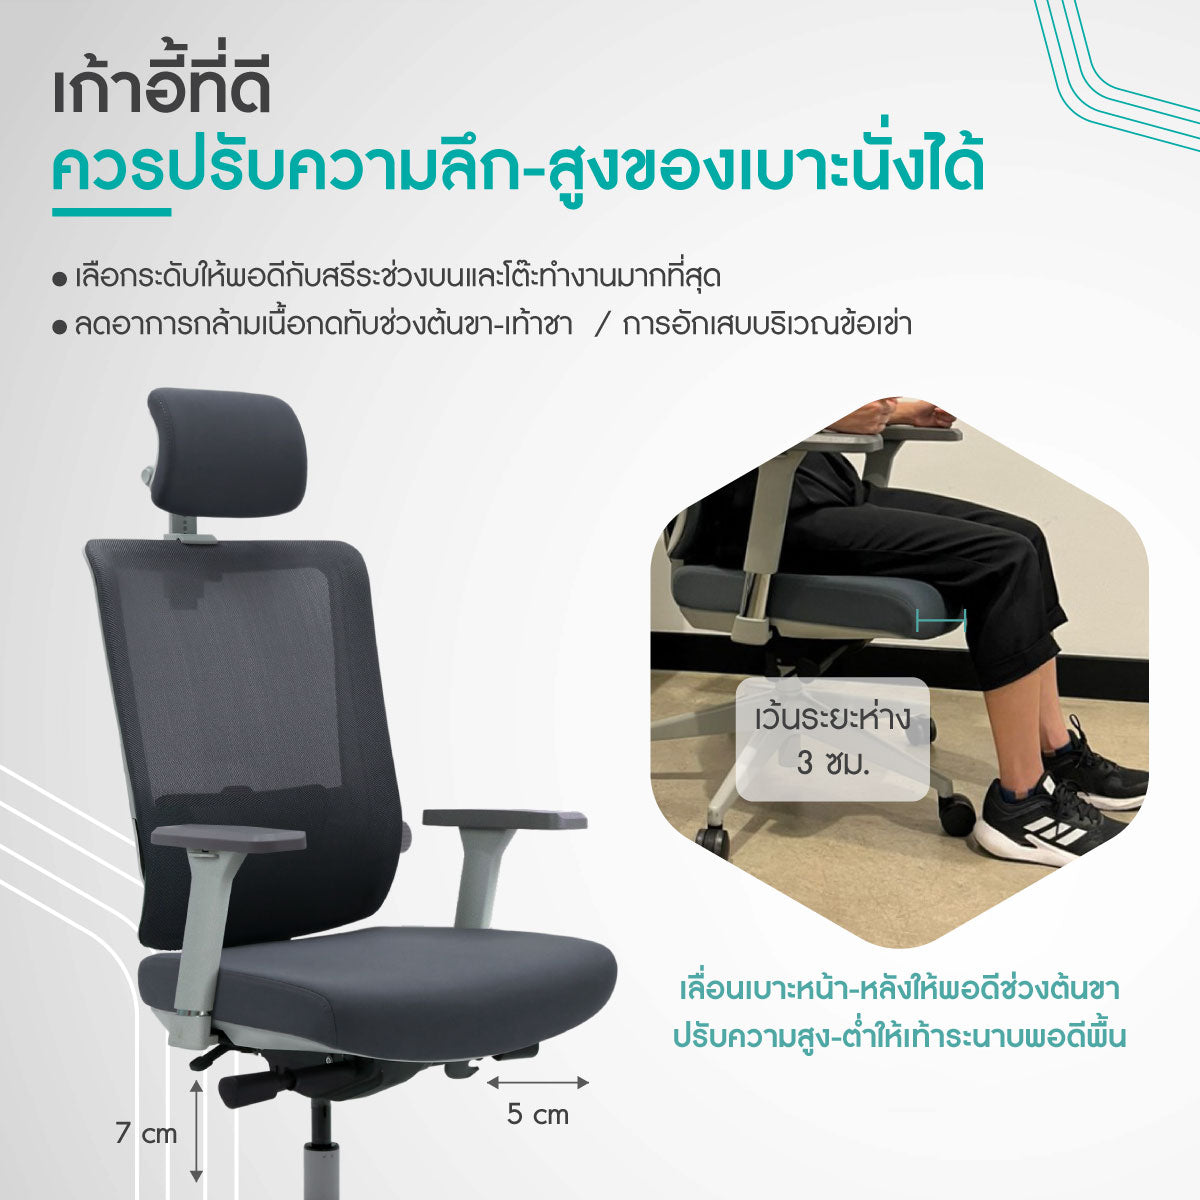 เก้าอี้เพื่อสุขภาพ ปวดขา ปวดเข่า เท้าชา